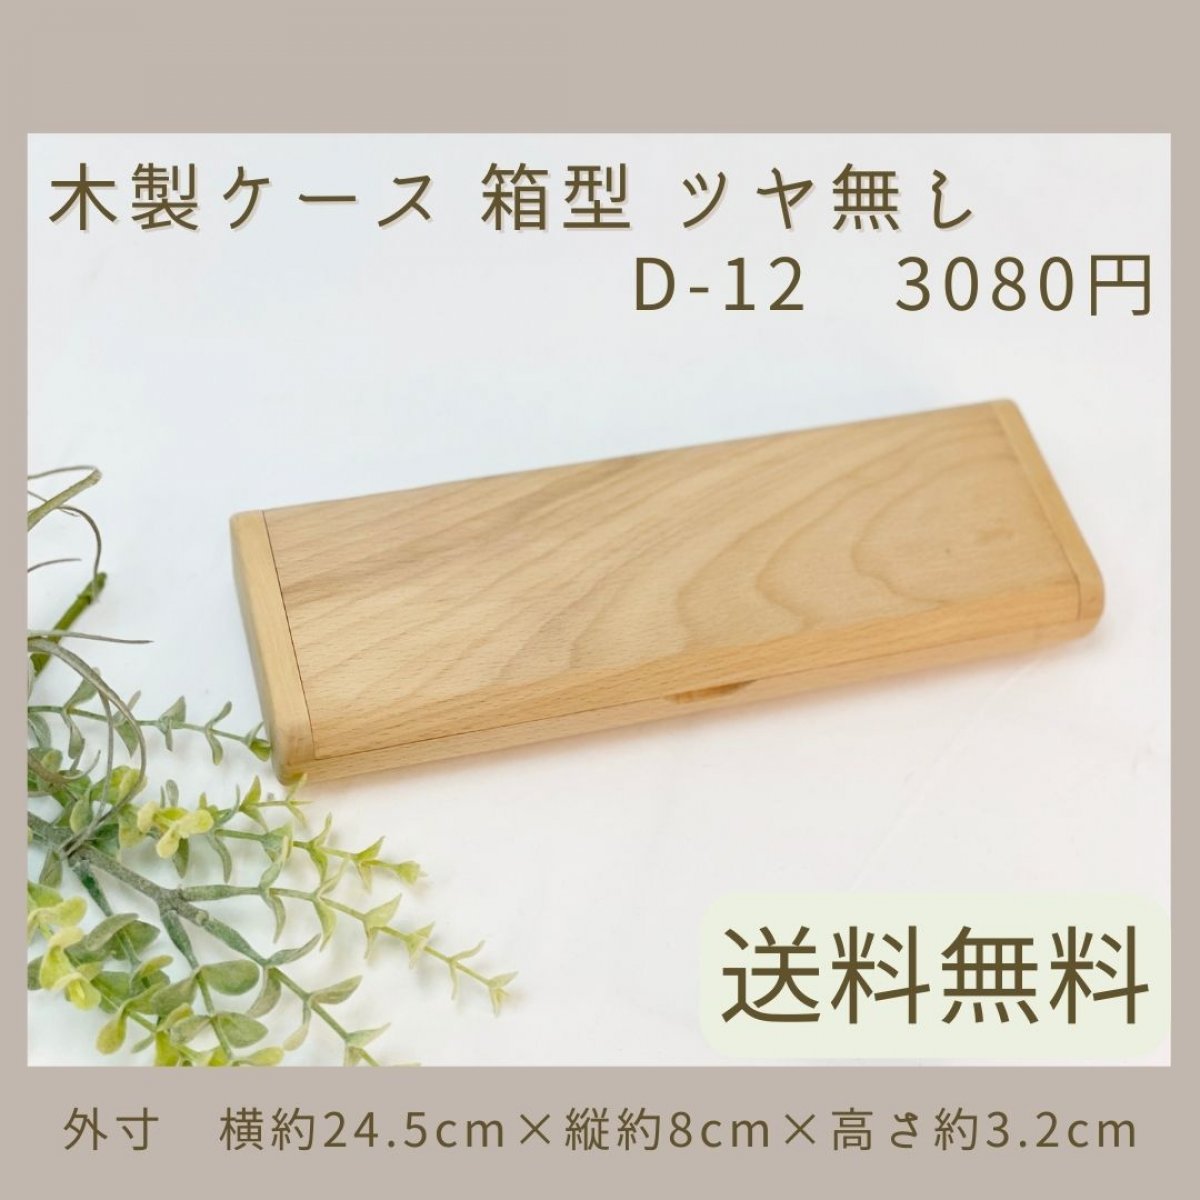 木製ケース 箱型 ツヤ無し【送料無料】D-12